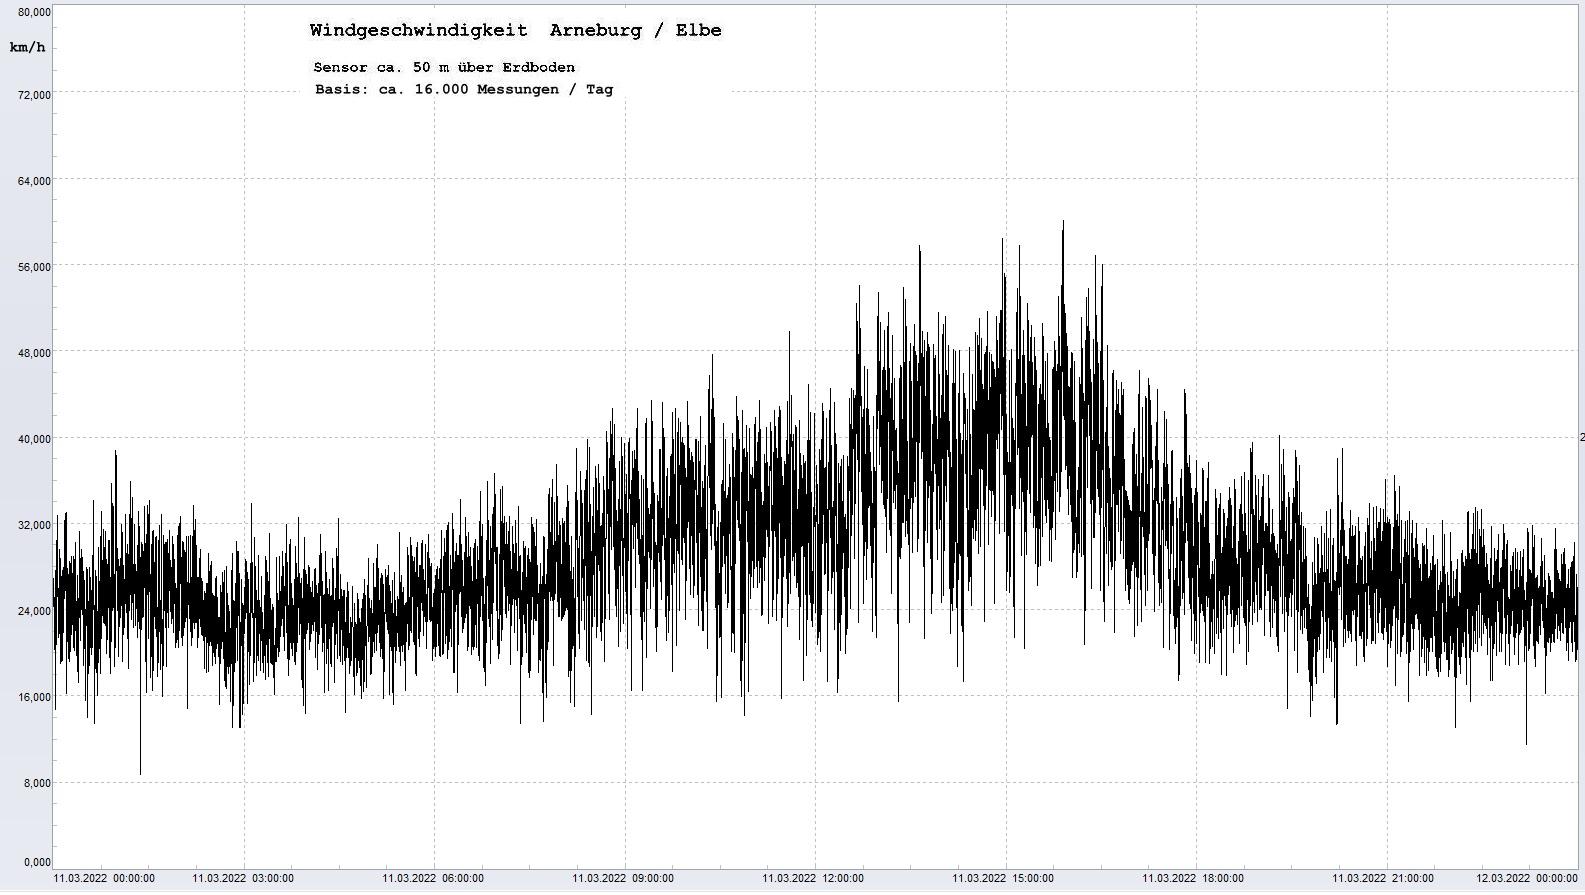 Arneburg Tages-Diagramm Winddaten, 11.03.2022
  Diagramm, Sensor auf Gebude, ca. 50 m ber Erdboden, Basis: 5s-Aufzeichnung